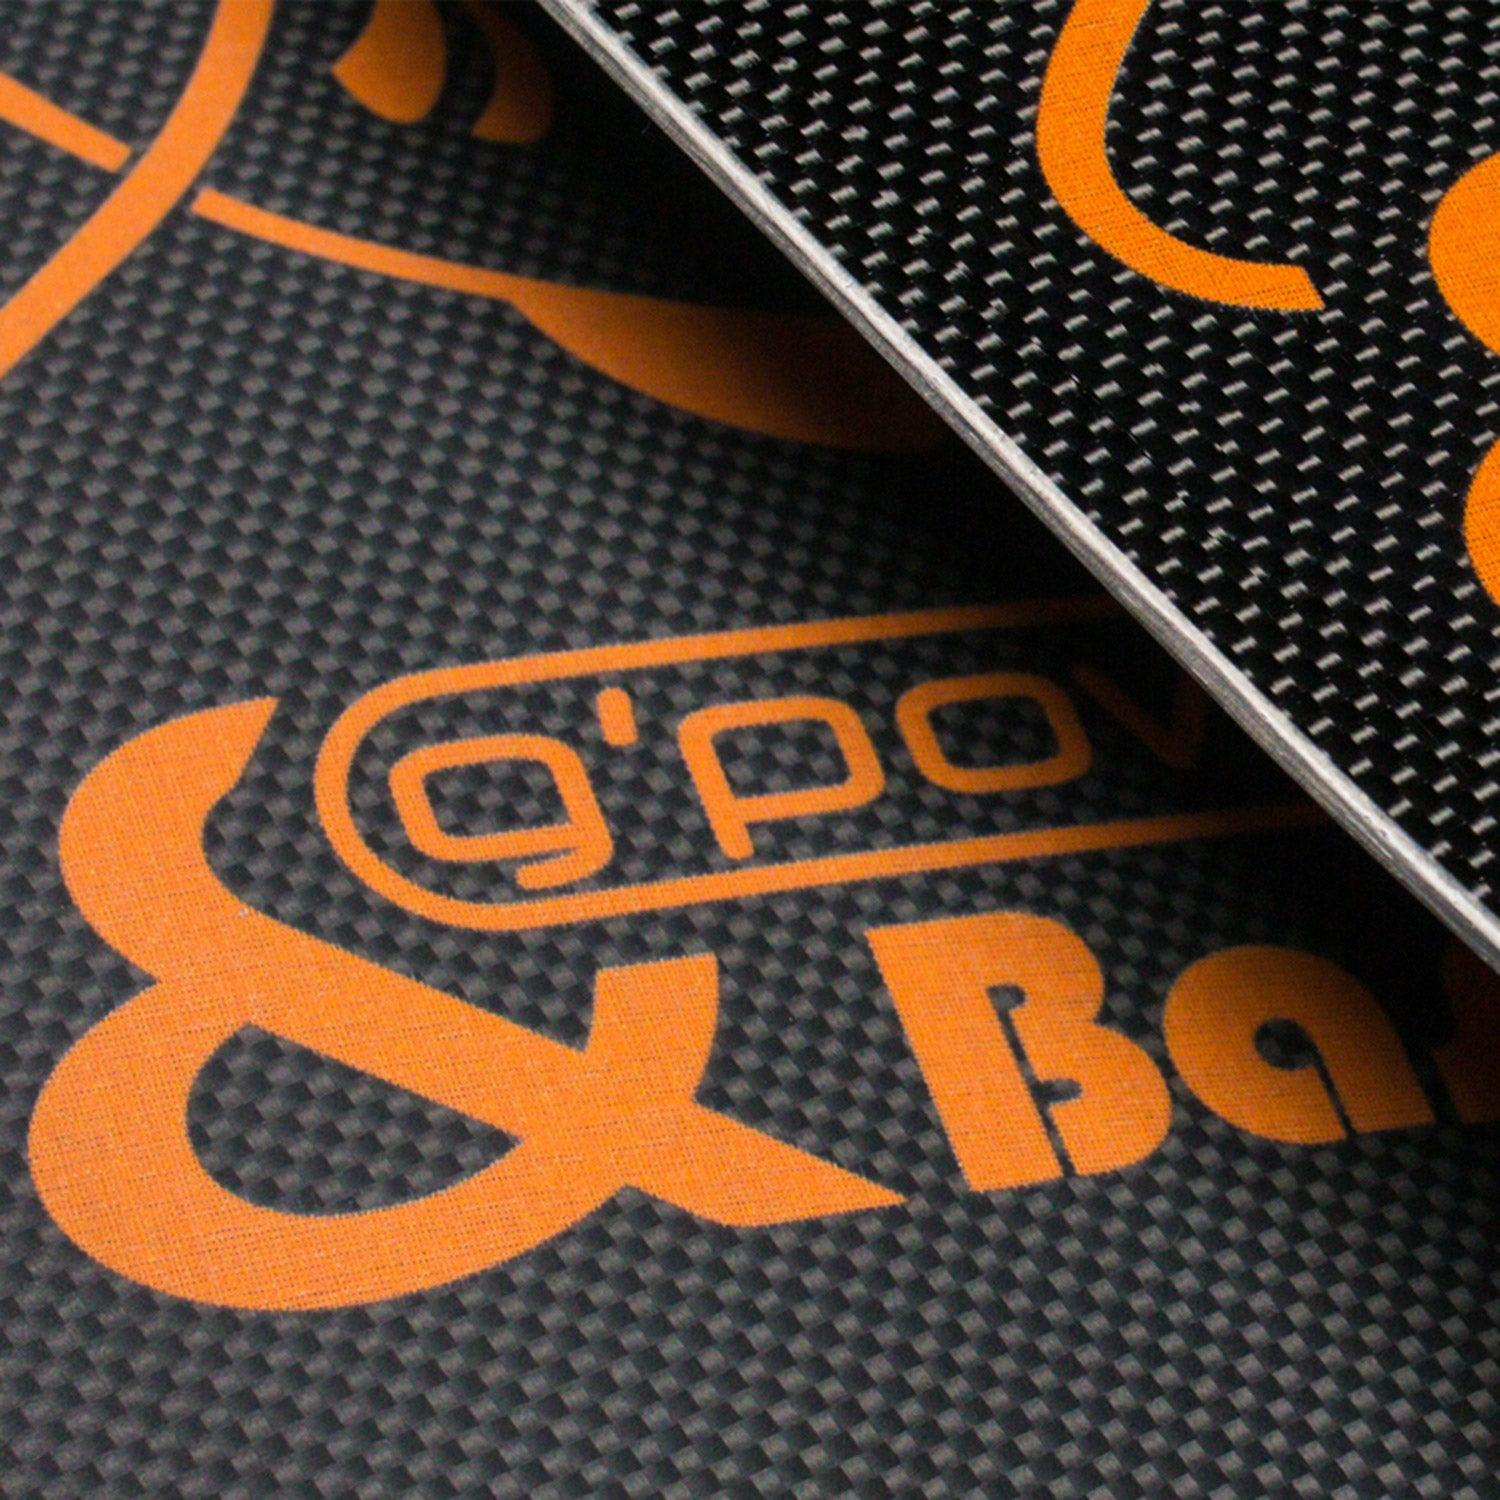 Produktbild von zubehör " Razor Race PRO " der Marke Bass für 295.00 €. Erhältlich online bei Lite Venture ( www.liteventure.de )